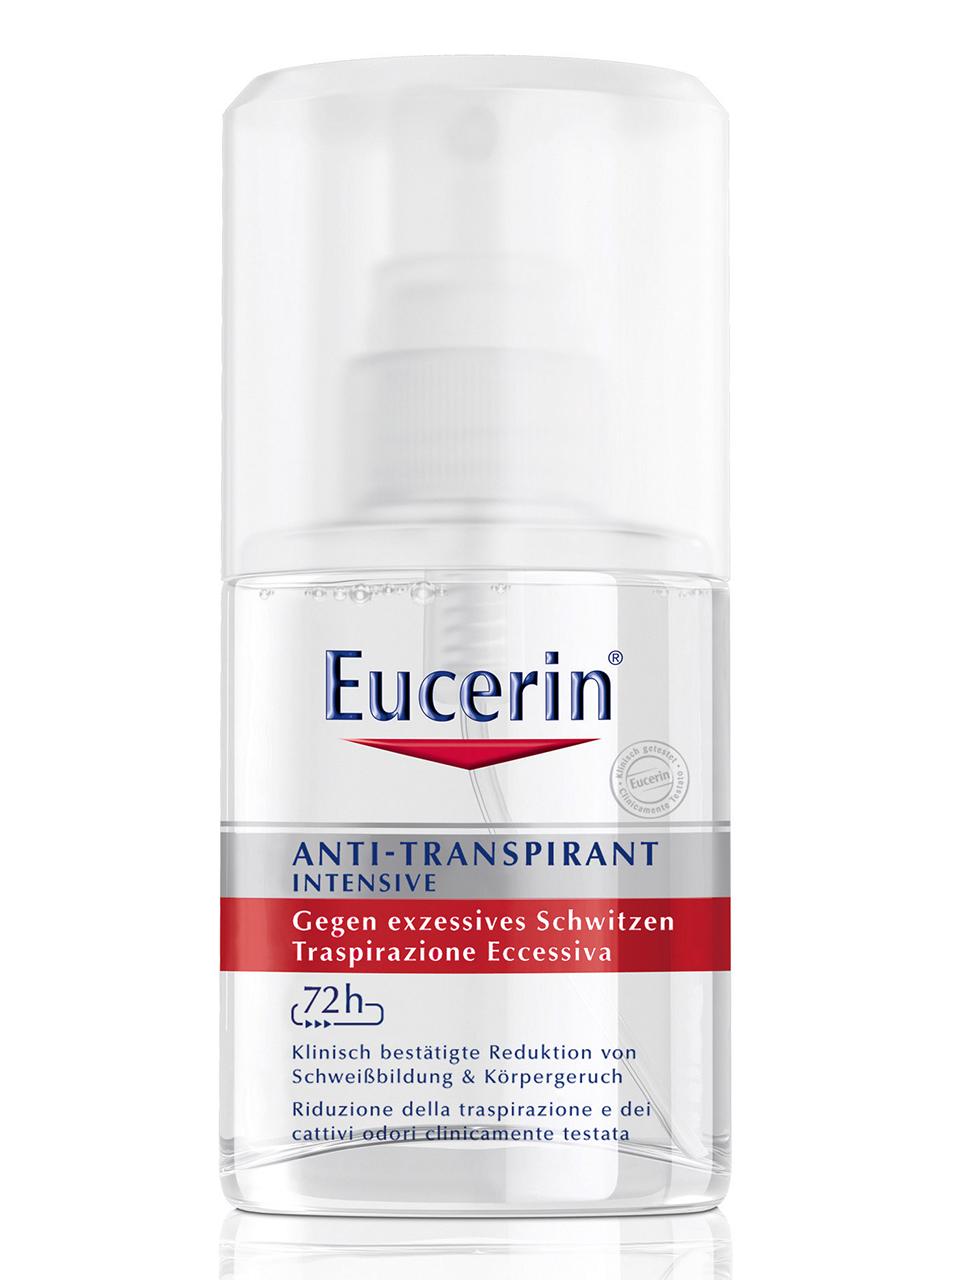 Eucerin Anti-Transpirant Intensiv Spray 72h